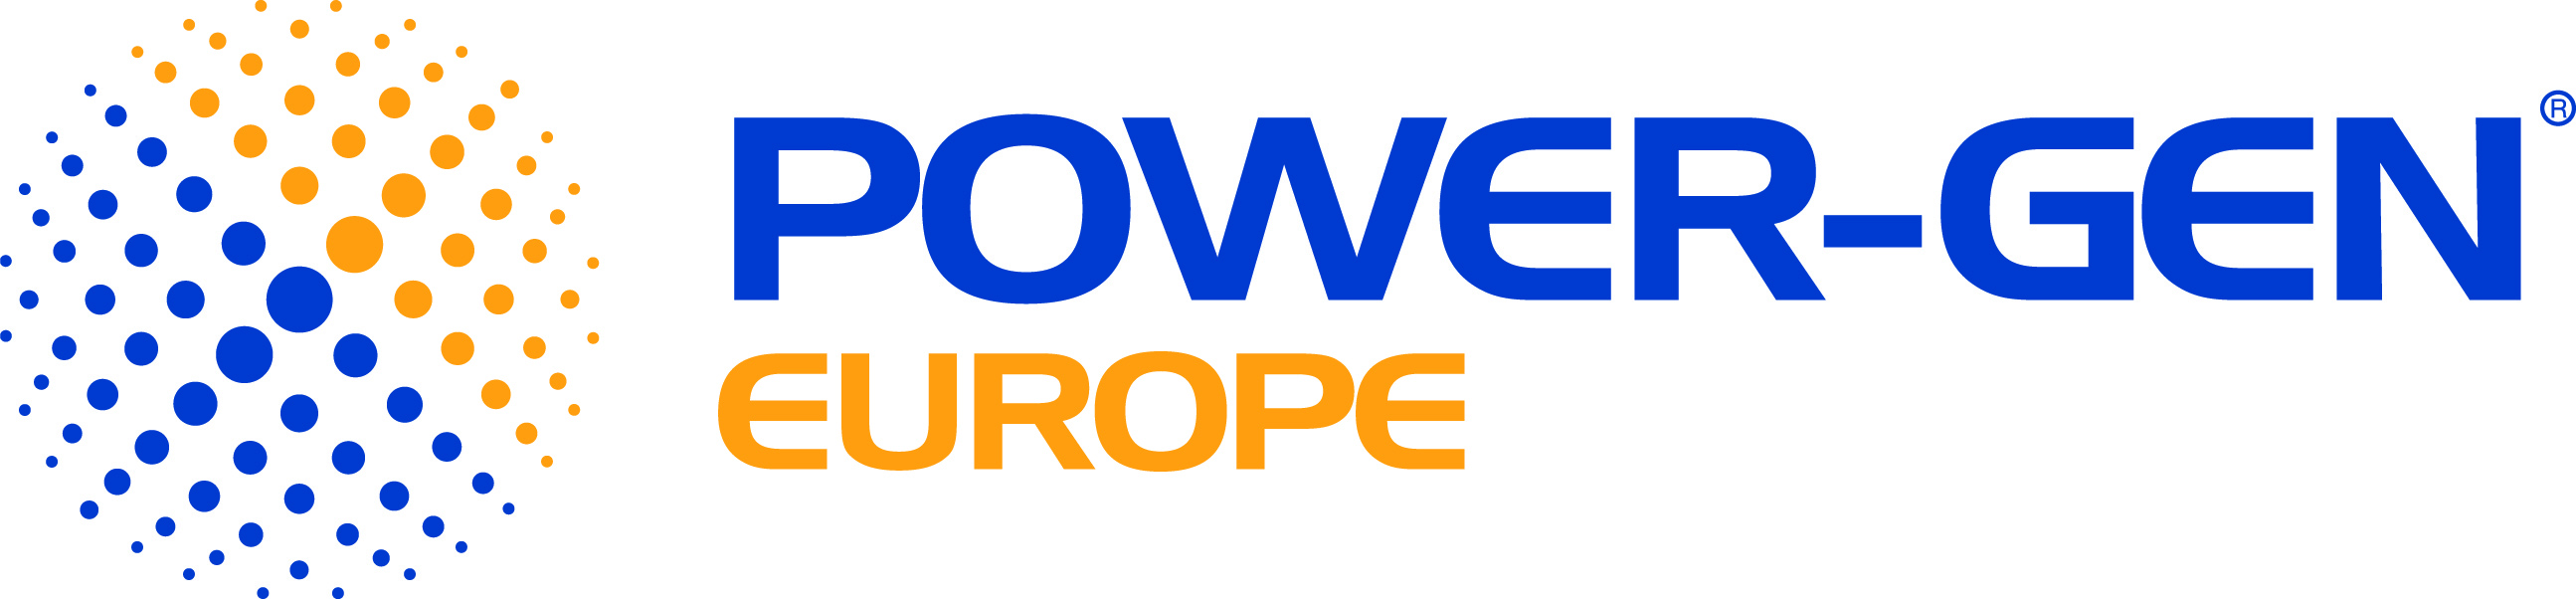 PowerGen_Europe_2C